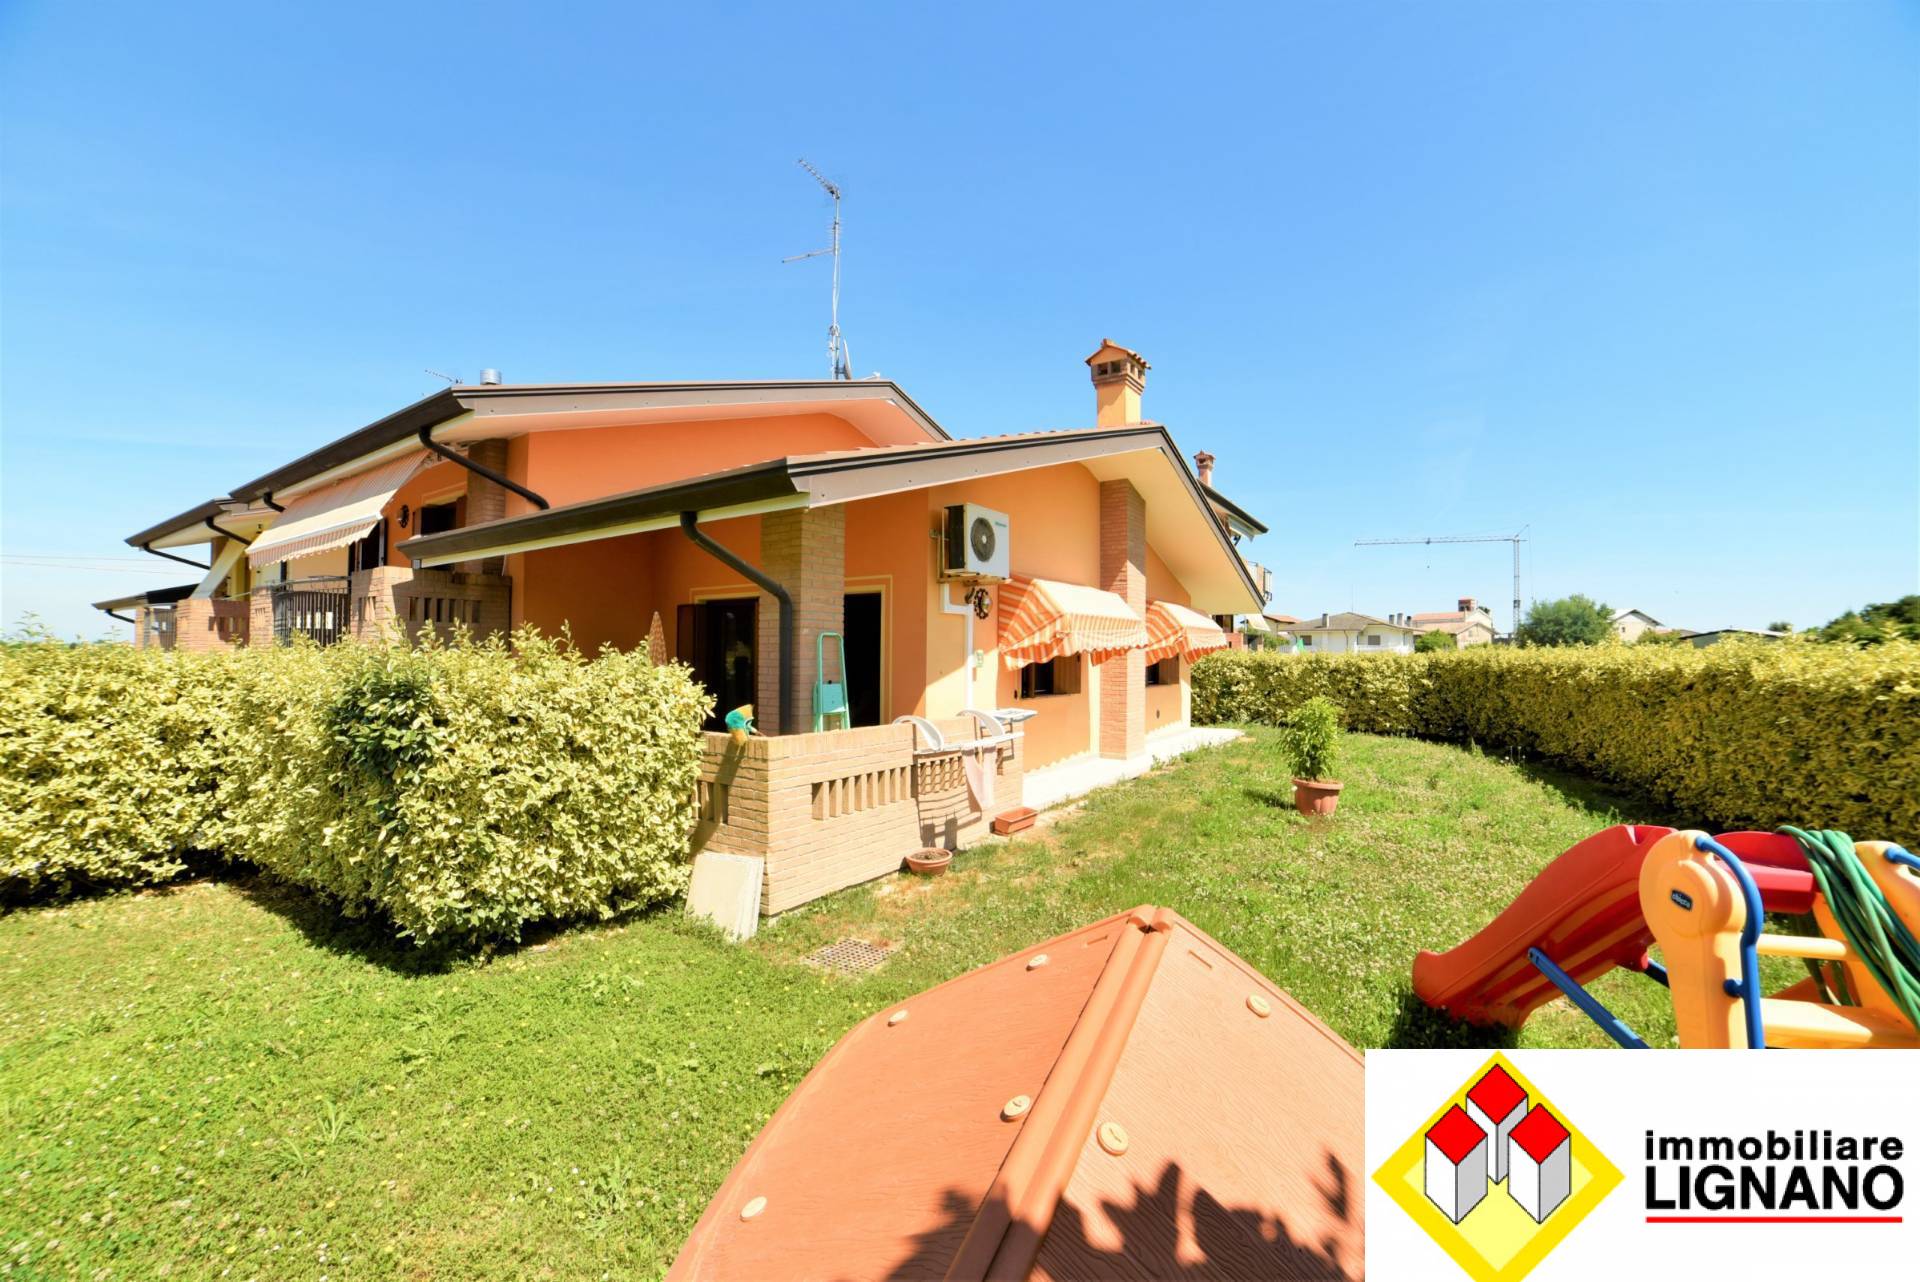 Villa a Schiera in vendita a Latisana, 6 locali, zona Zona: Gorgo, prezzo € 205.000 | CambioCasa.it